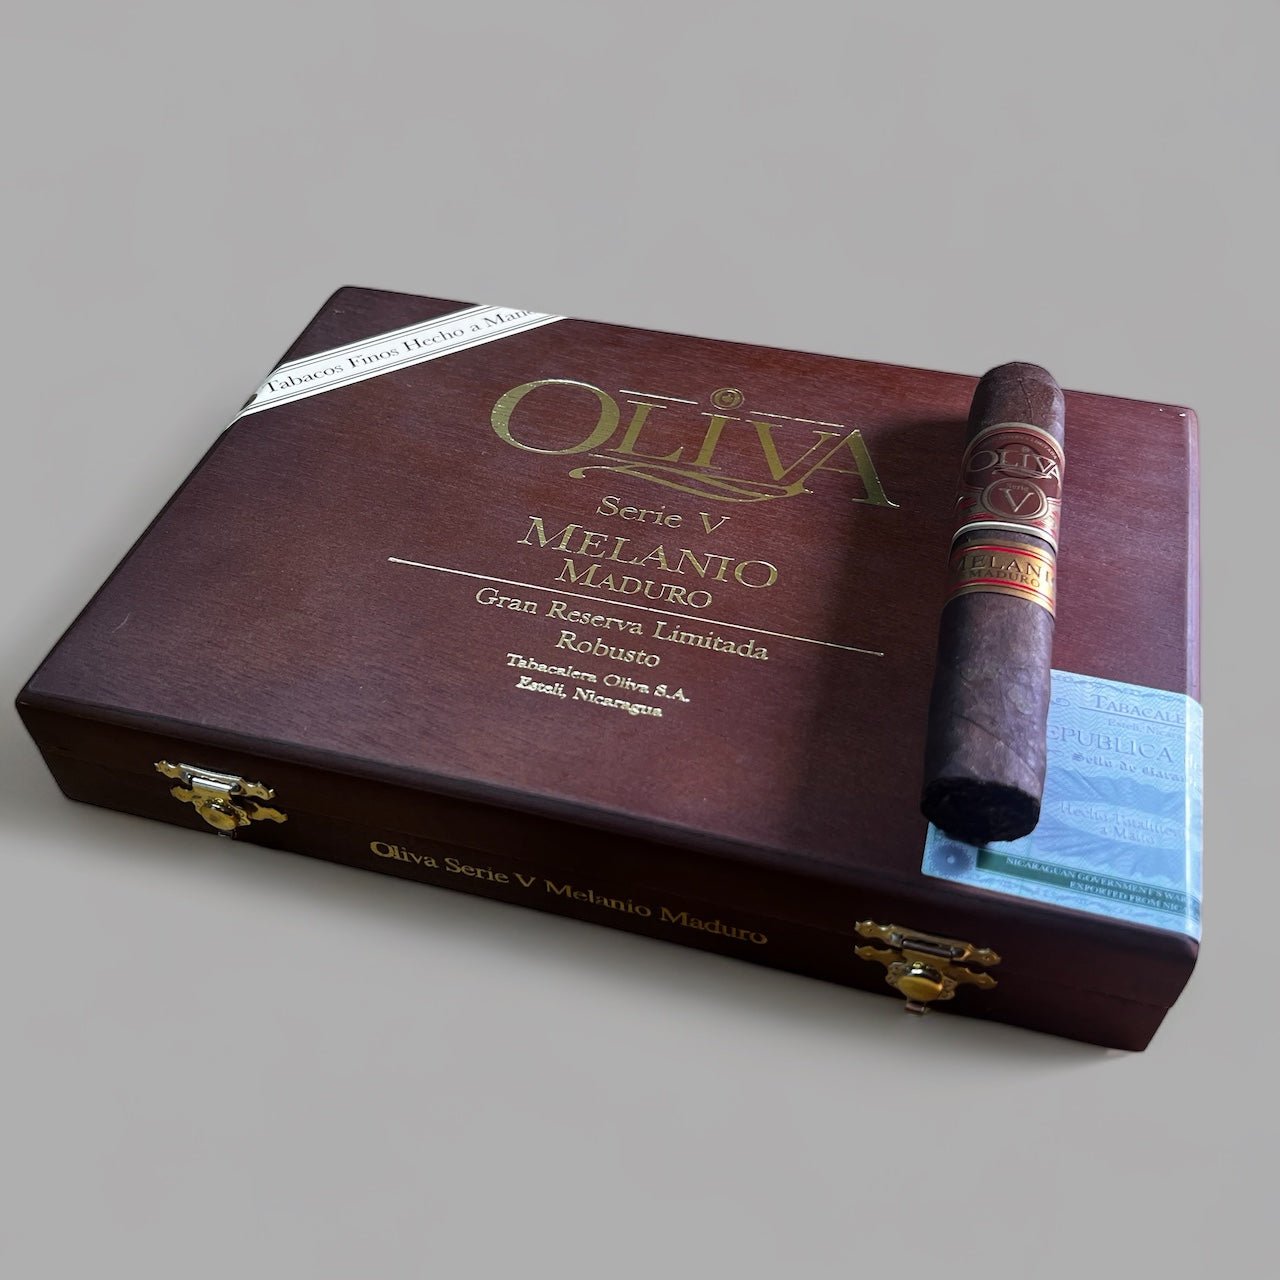 Oliva Serie V Melanio Maduro Robusto - Cigar 30